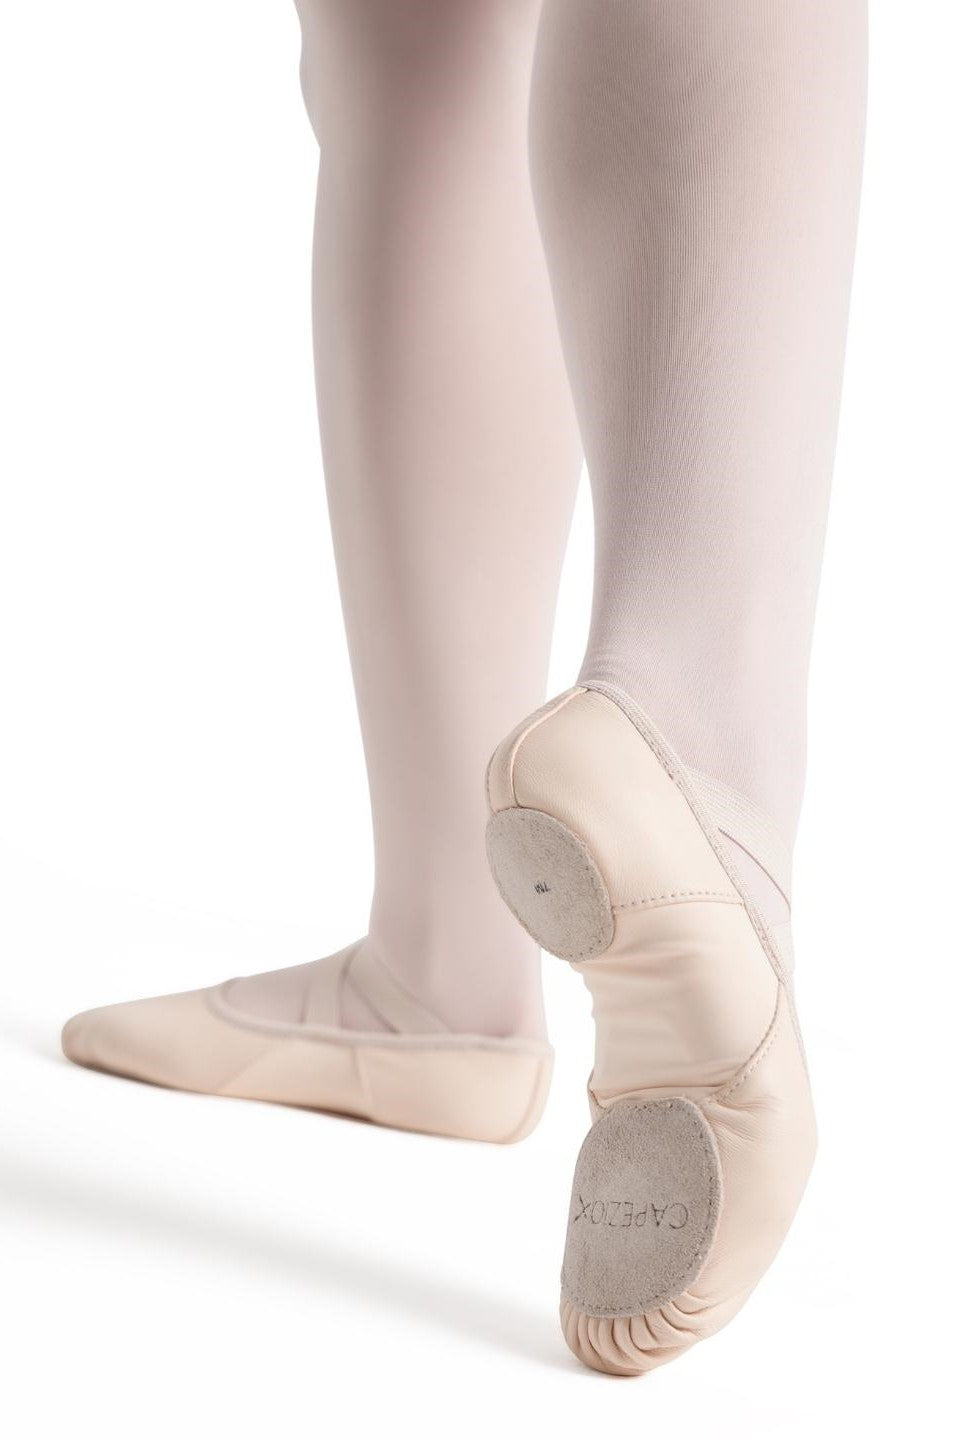 Capezio Hanami Leather Split Sole LPK Ballet Shoe Adults 2038W